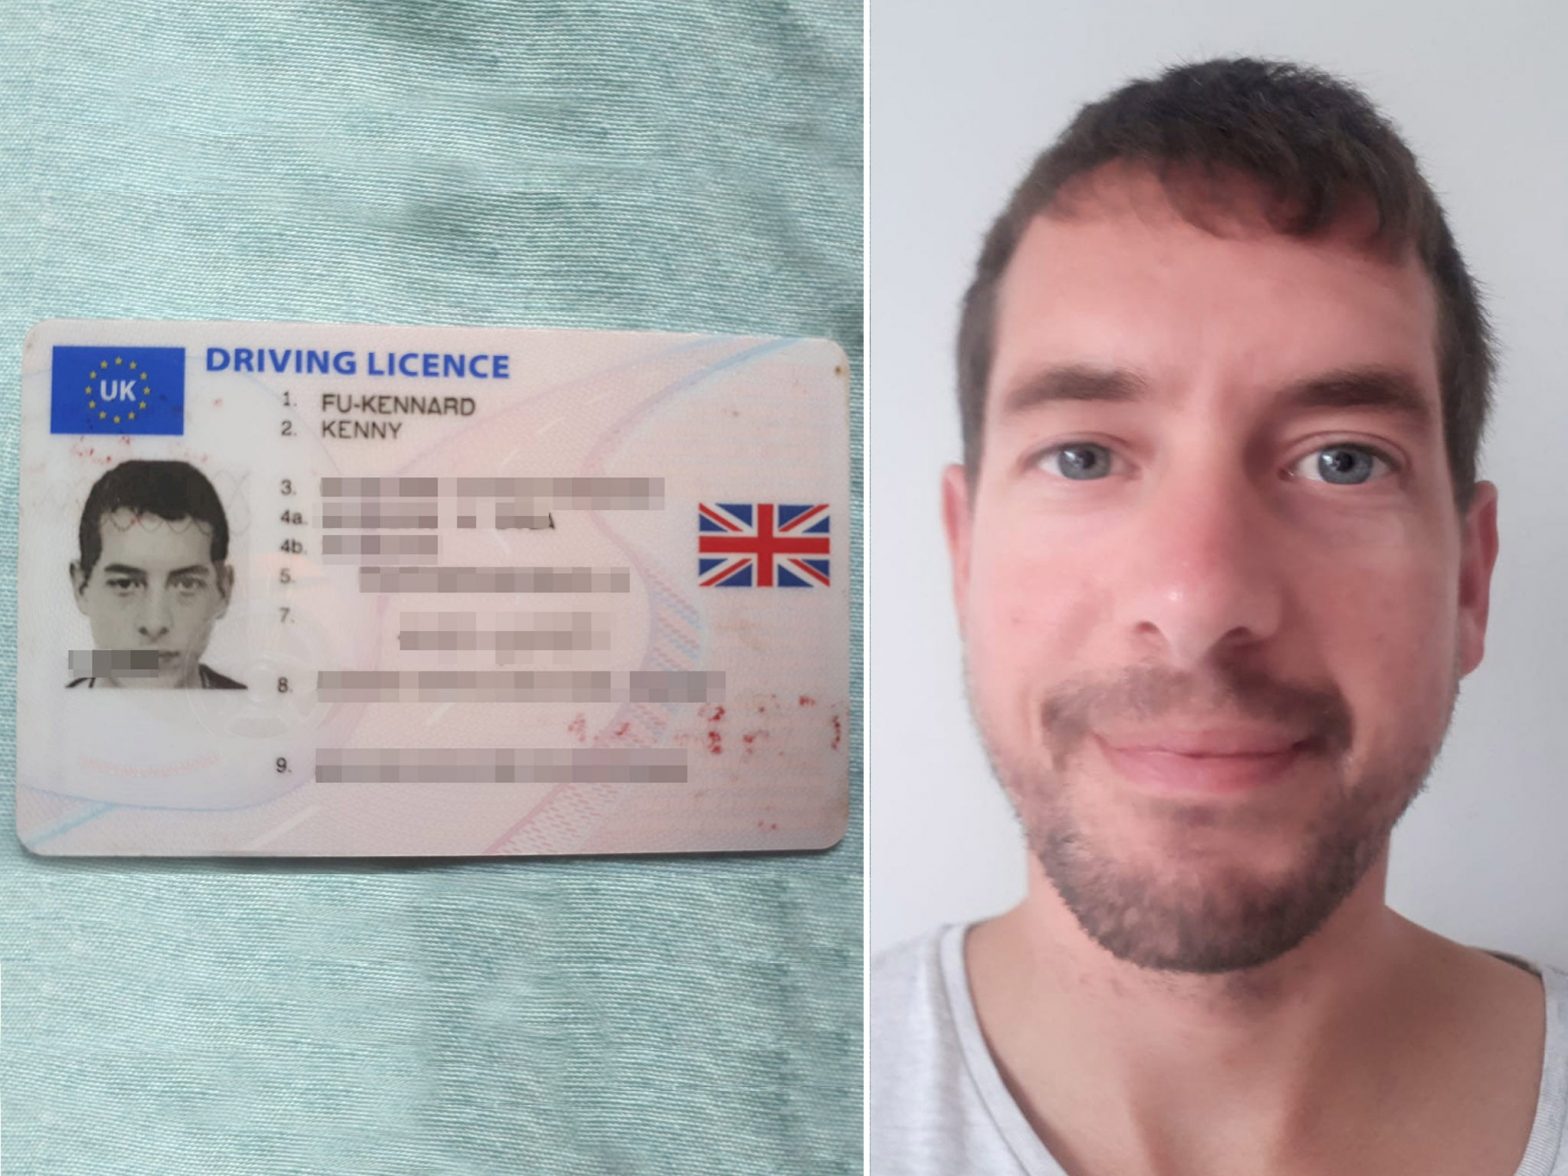 Man who changed surname to Fu-Kennard denied UK passport